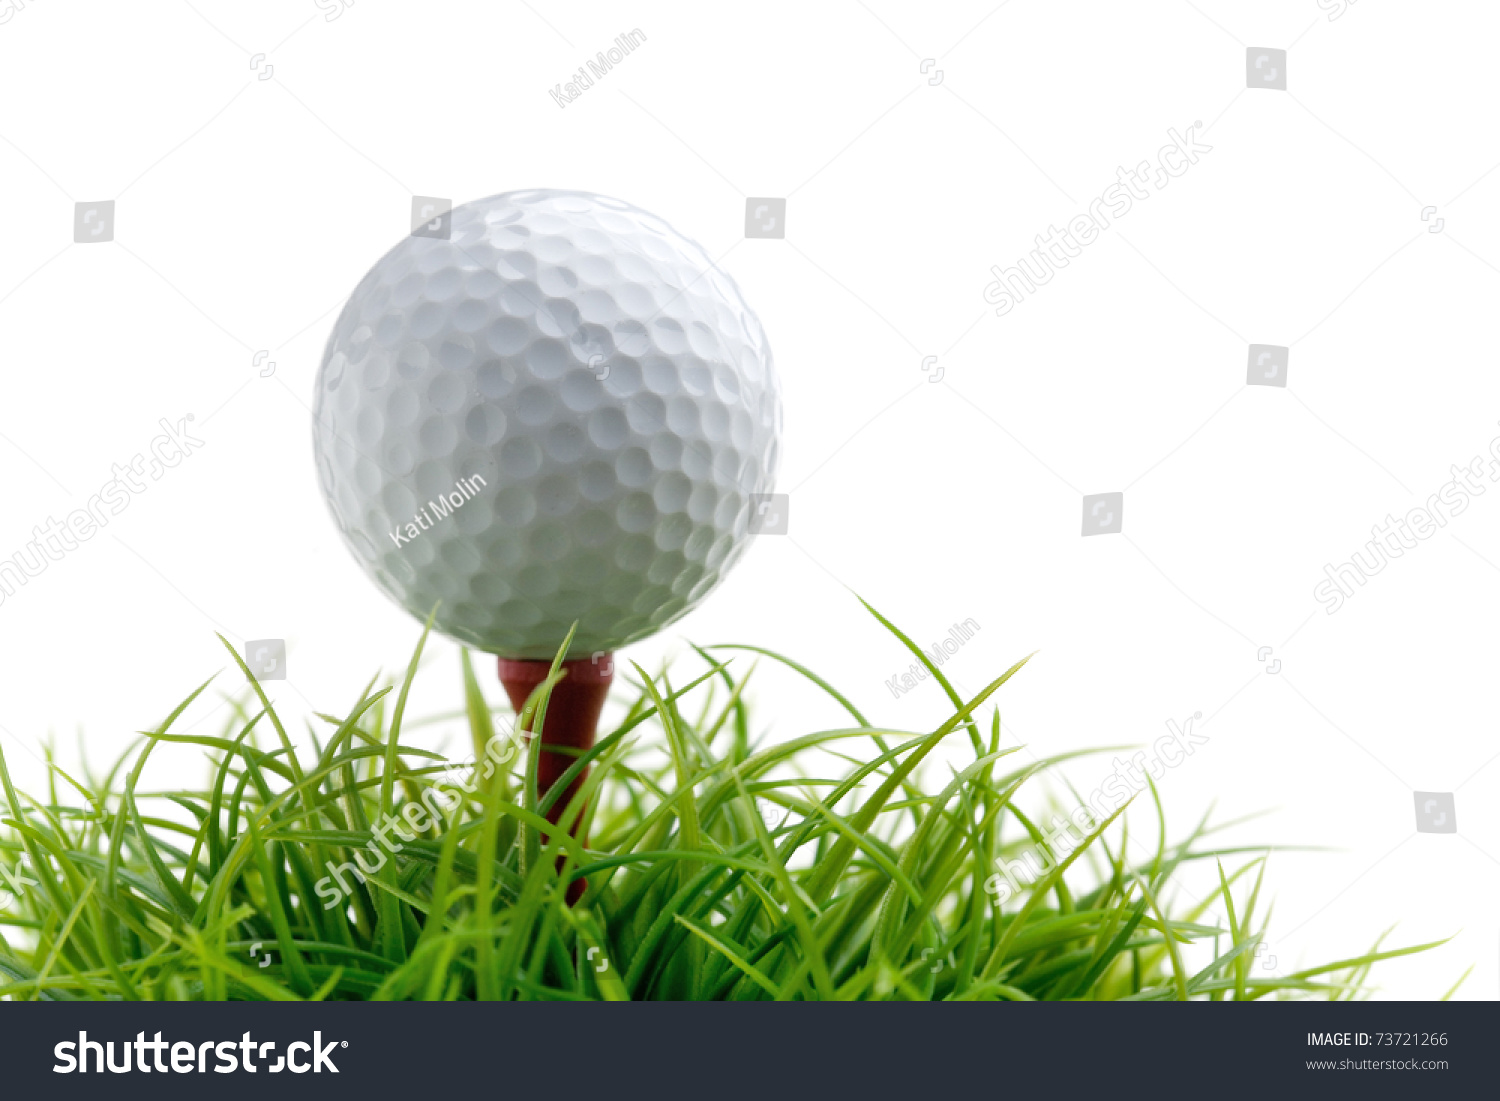 Golf ball on green grass, selective focus #73721266